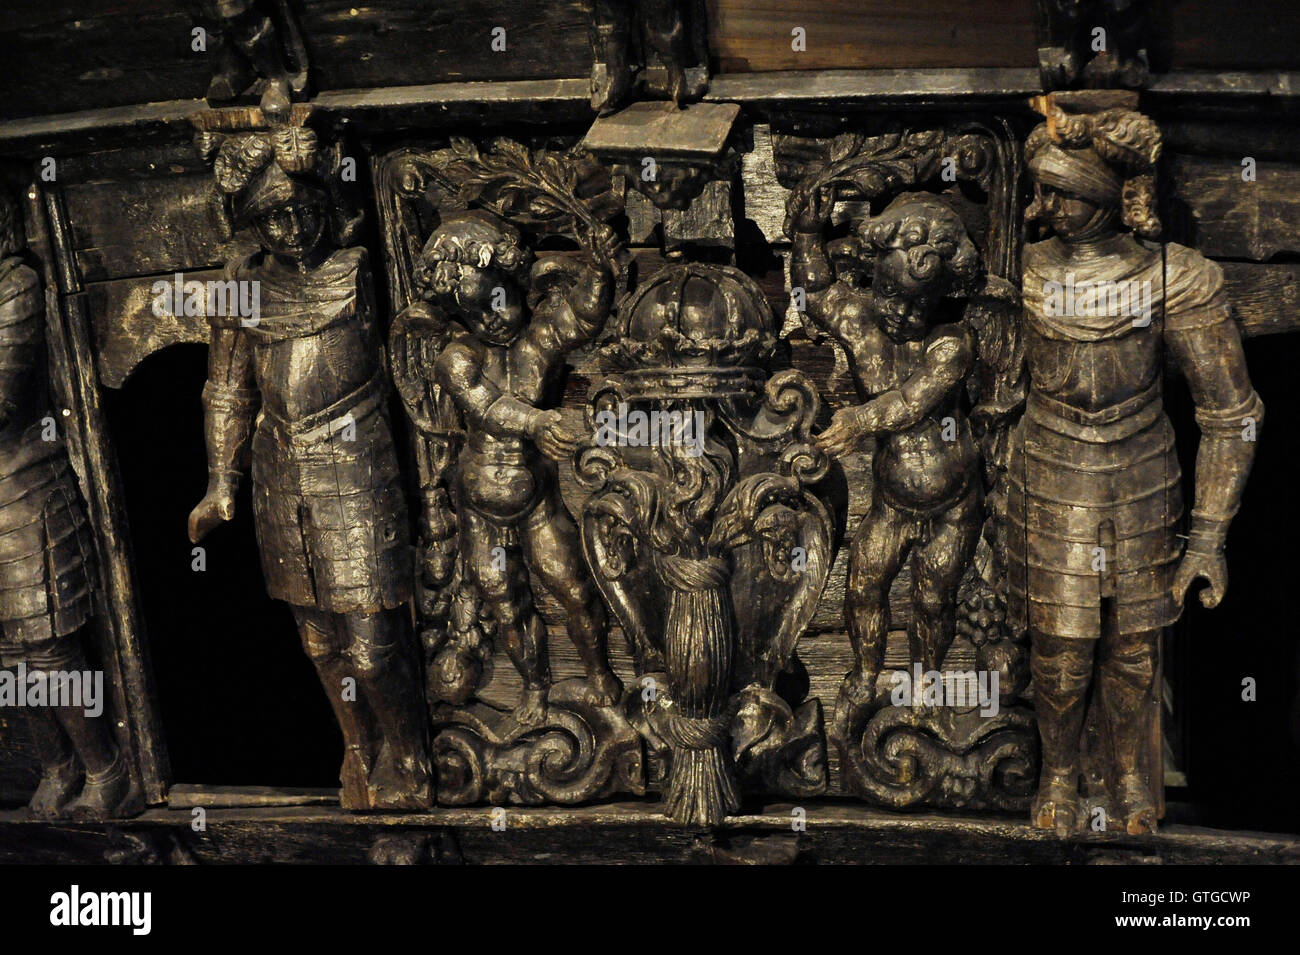 Warship Vasa. Construit 1626-1628. Détail de l'arrière. Les Lions tenant le blason de la Suède. Musée Vasa. Stockholm. La Suède. Banque D'Images